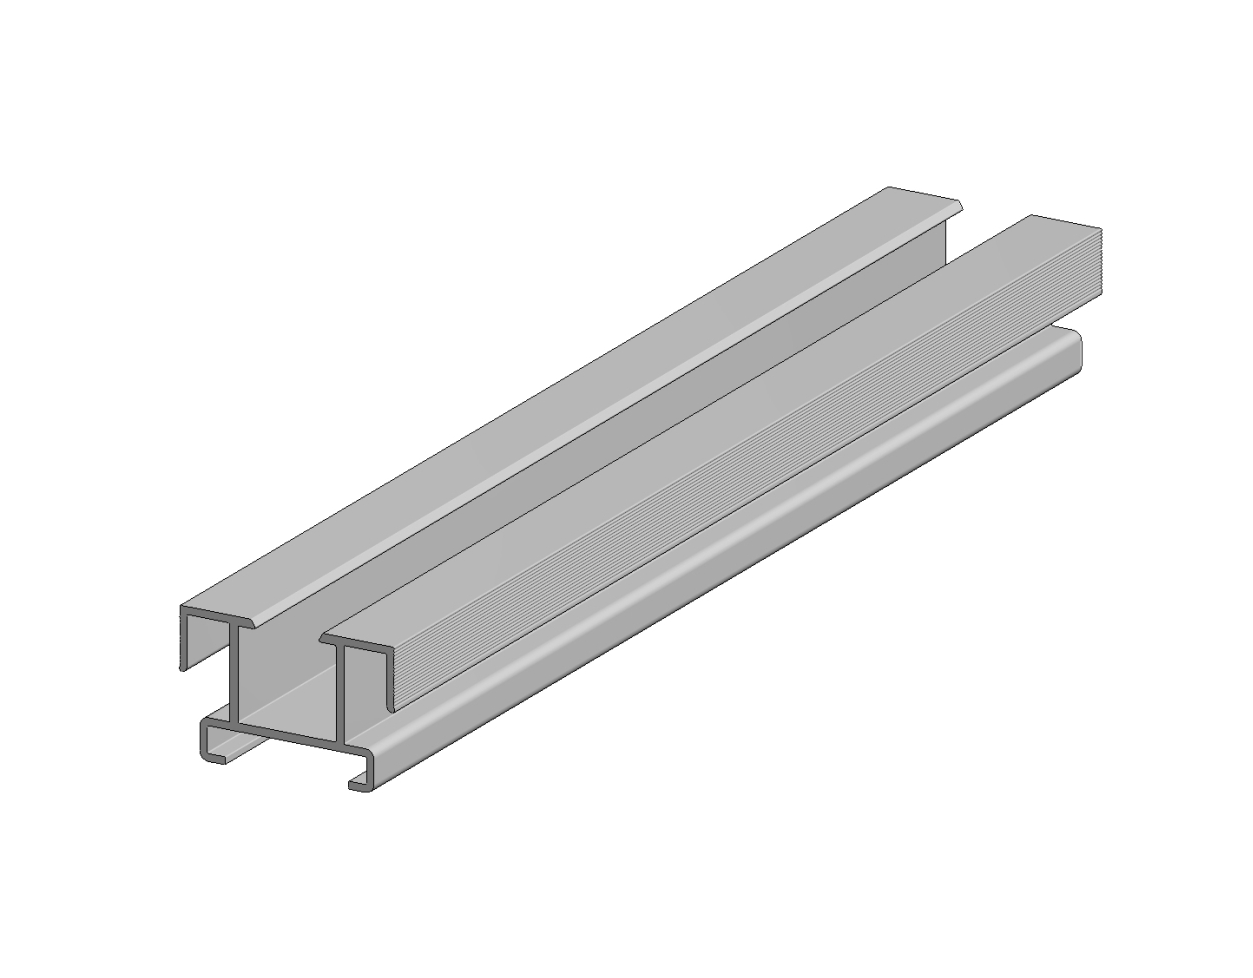 Aslon | Aluminium balk | 4 x 4.3 x 400 cm